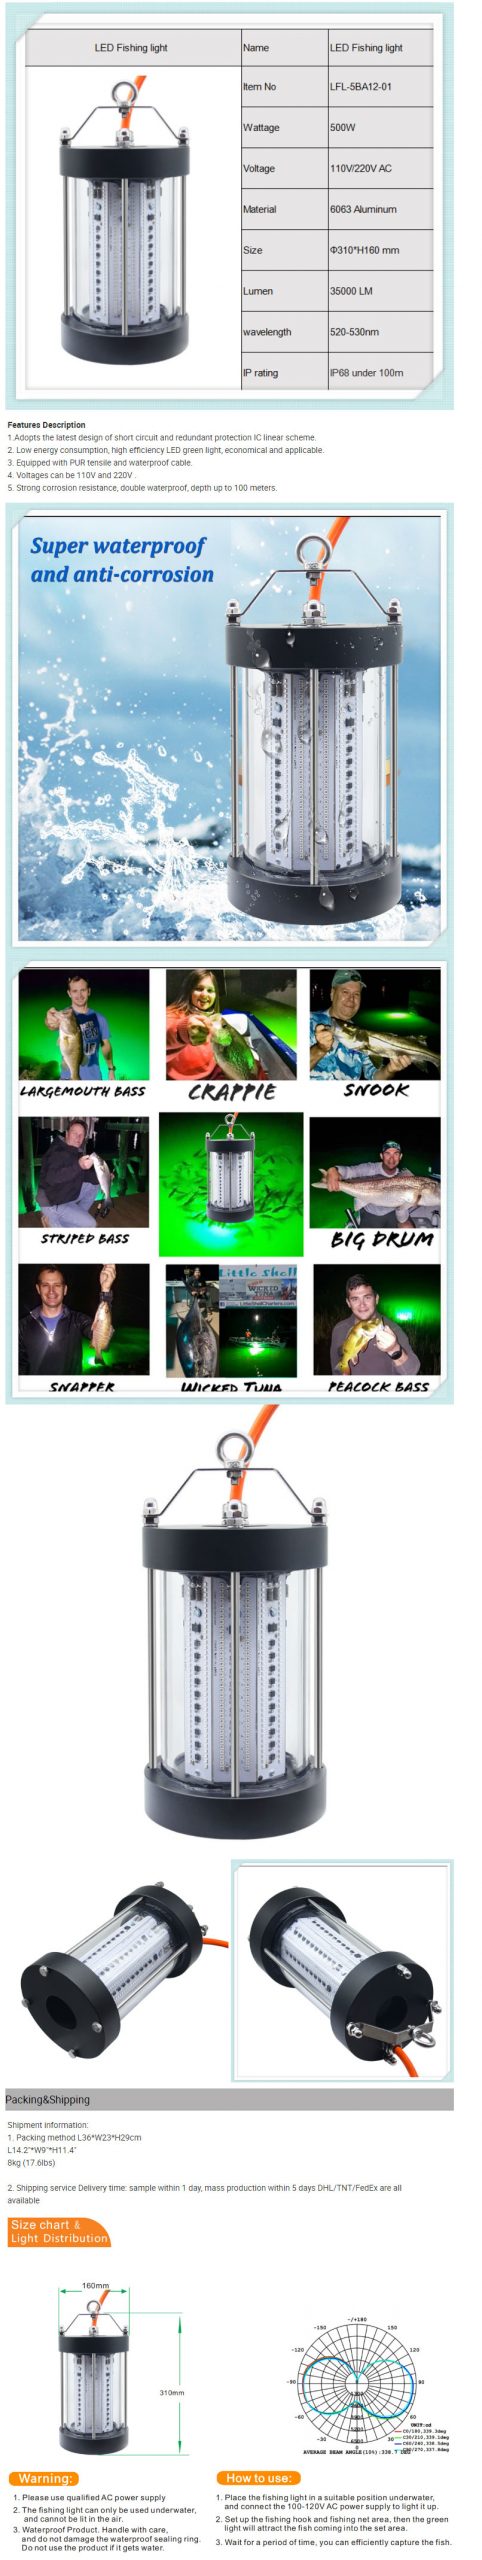 LED Underwater Fishing Light